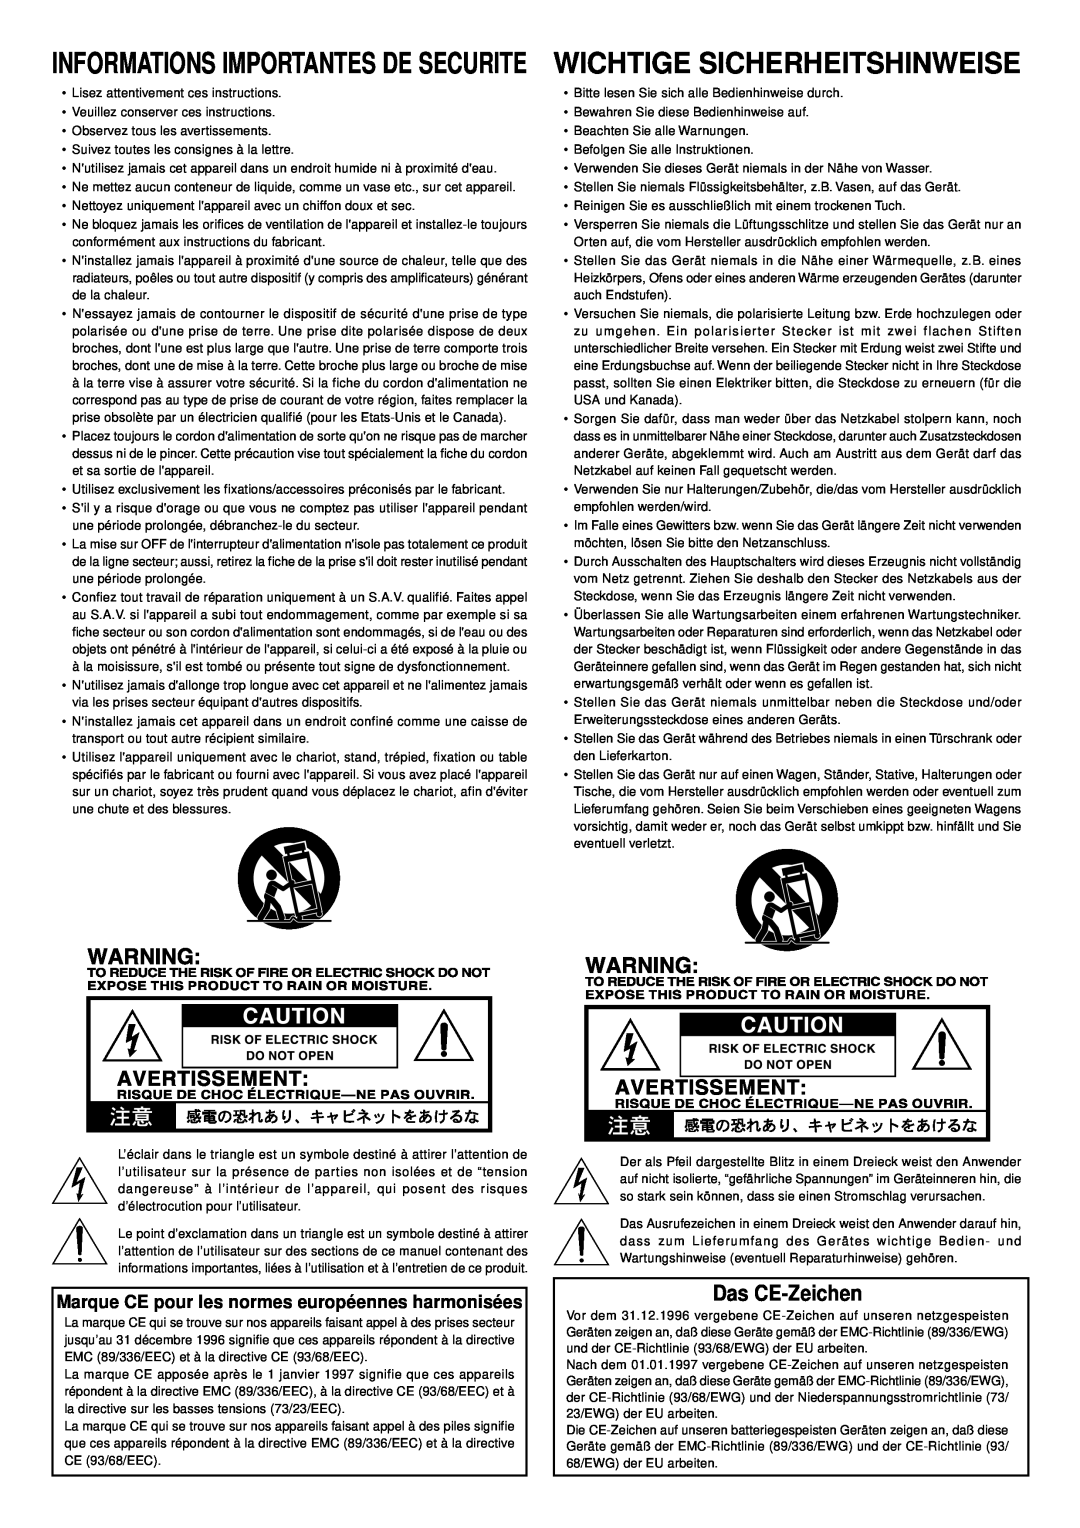 Korg DTR-1000, DTR-2000 important safety instructions Das CE-Zeichen, Marque CE pour les normes européennes harmonisées 